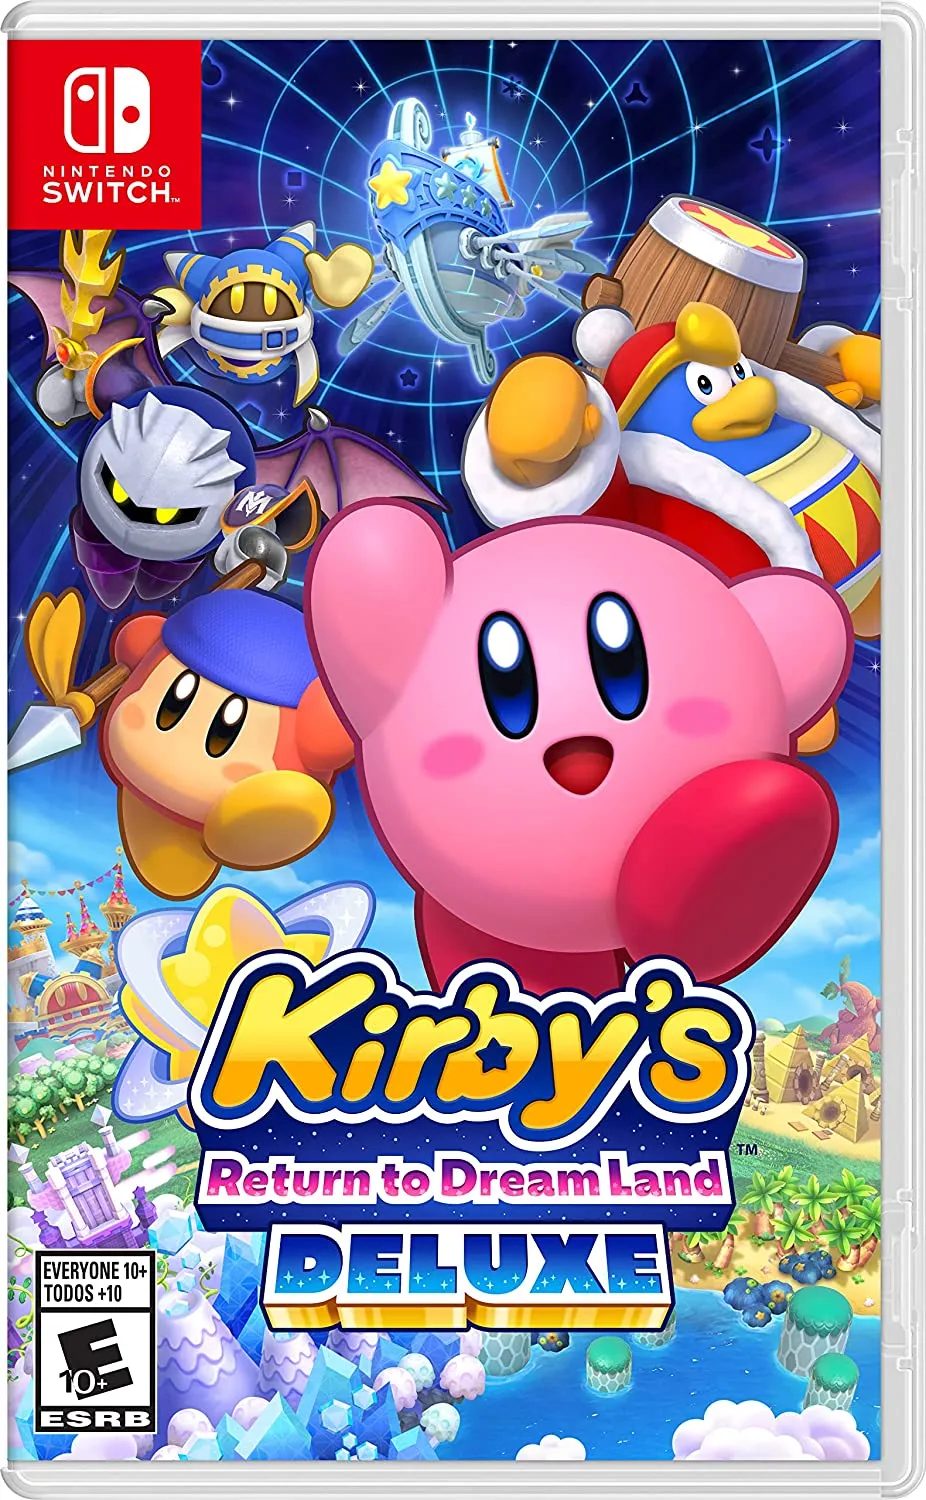 Illustration du jeu Kirby's Return to Dream Land Deluxe.